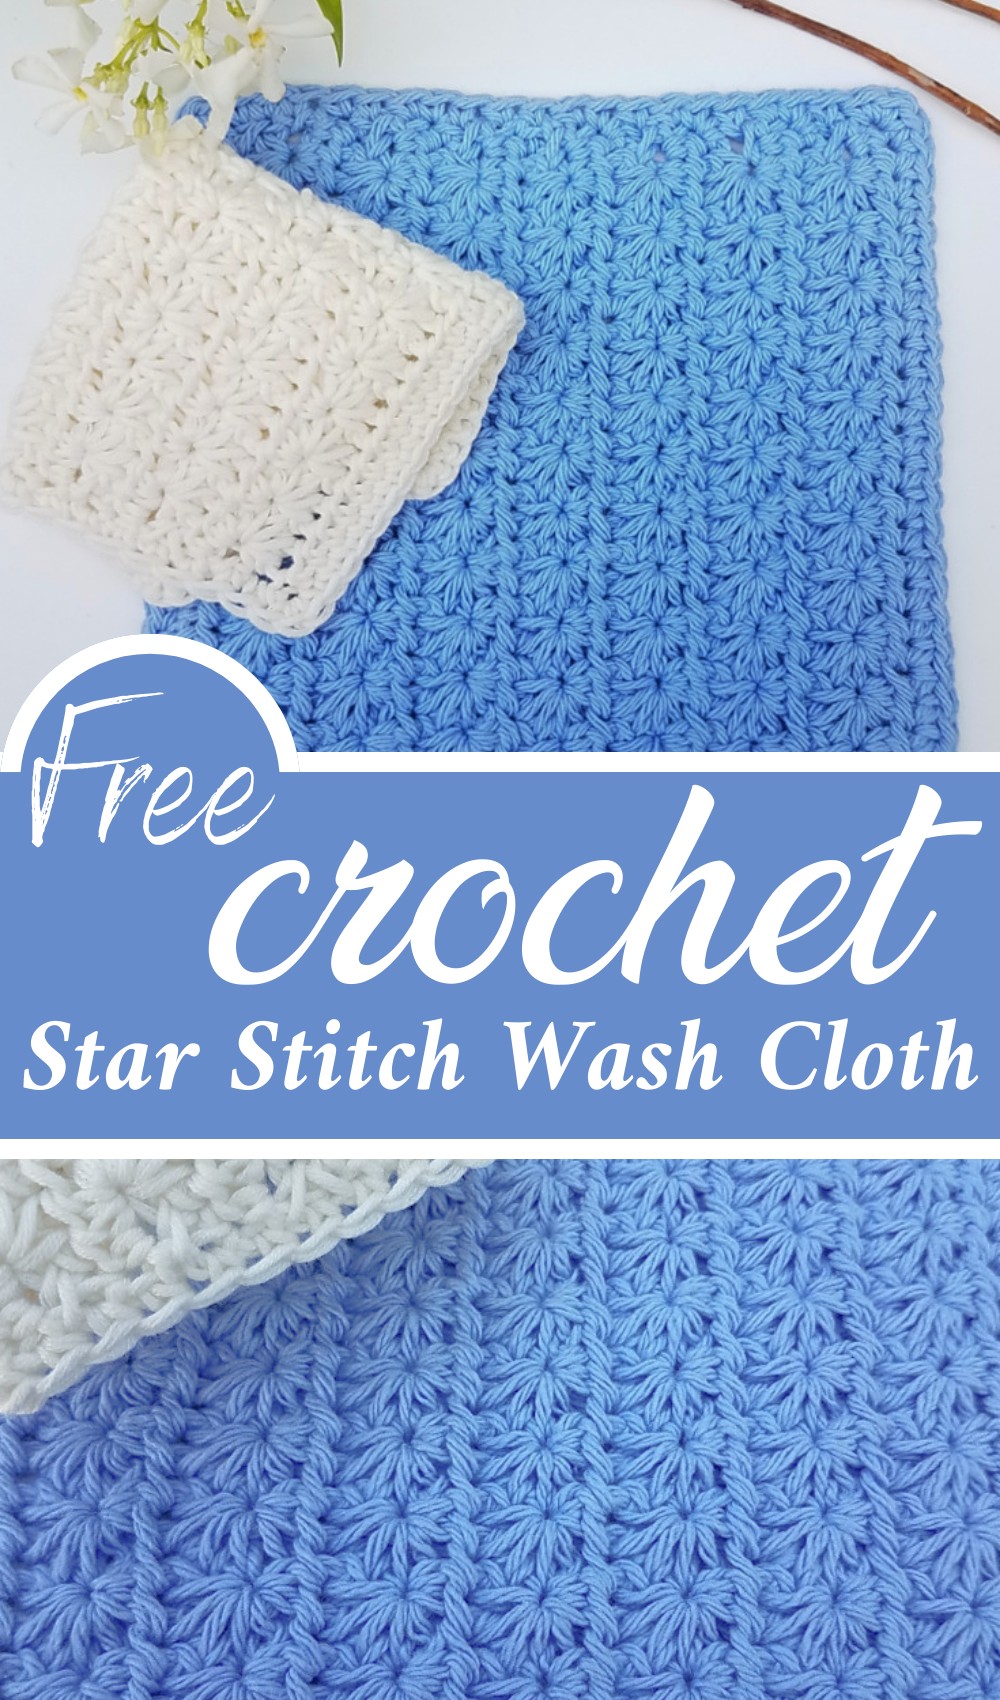 Star Stitch Wash Cloth